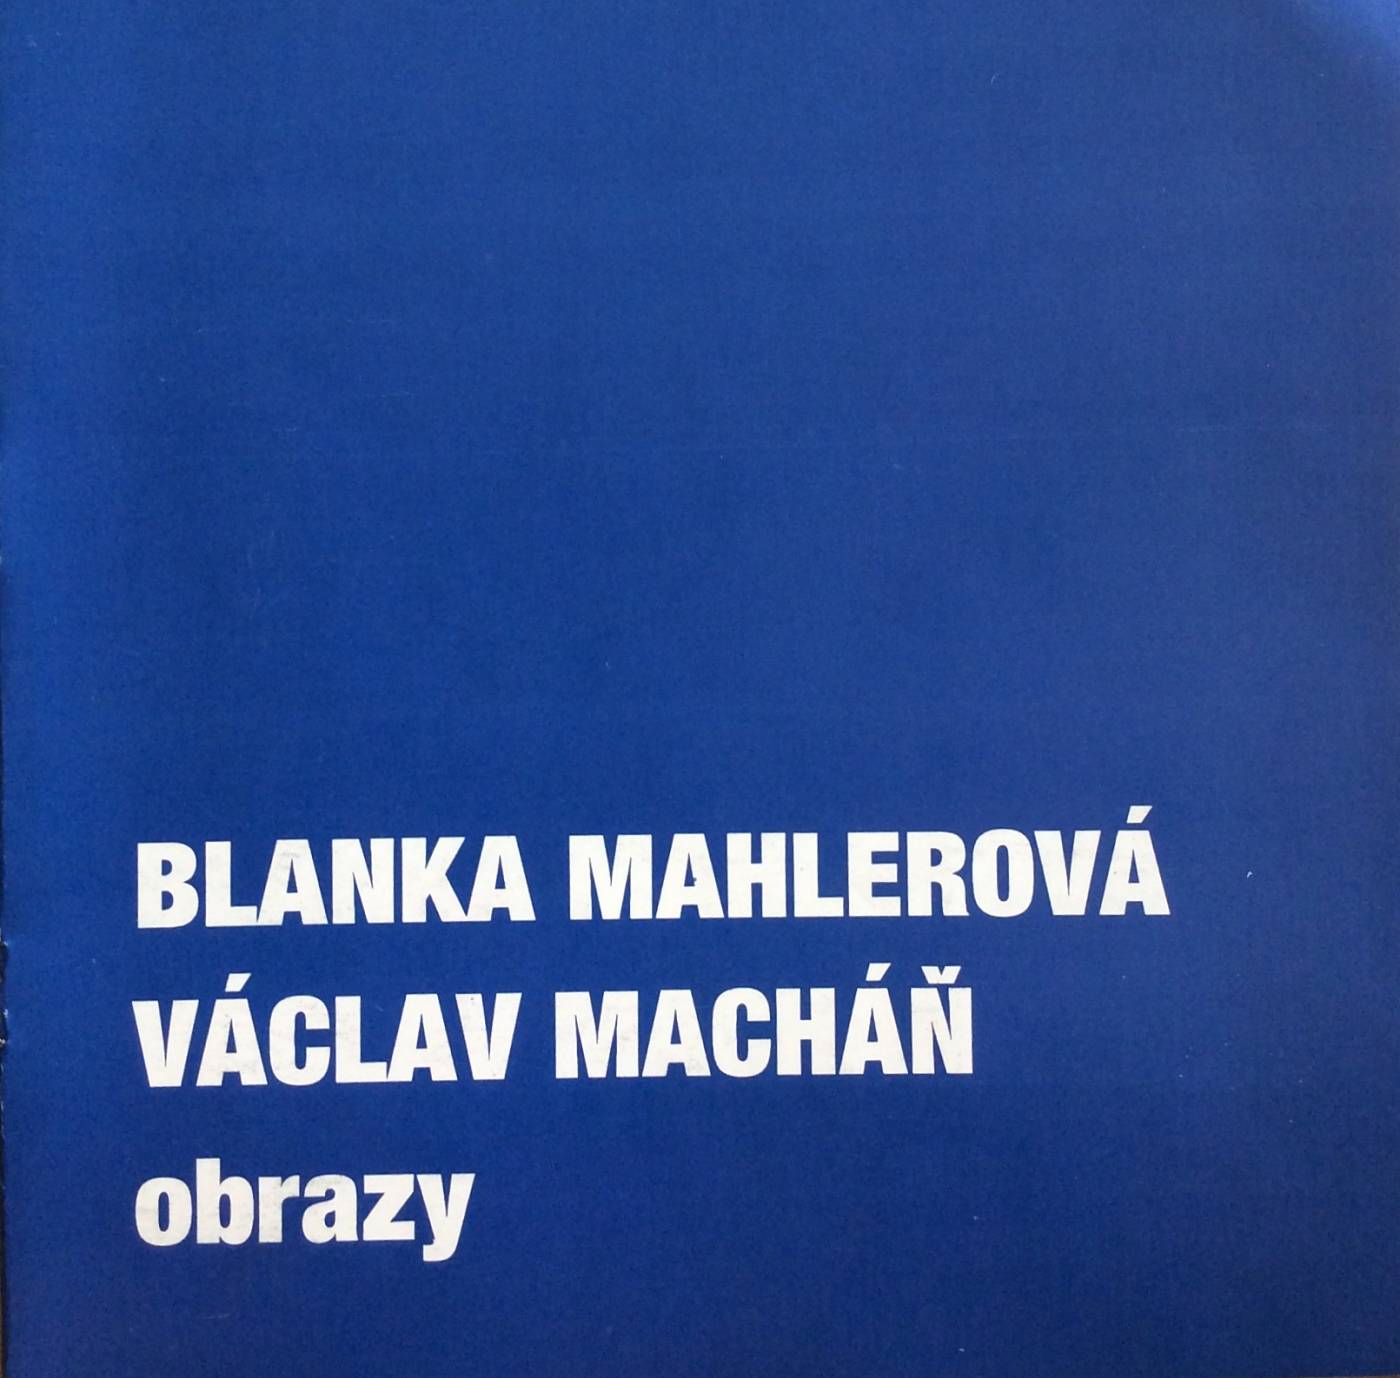 Blanka Mahlerová, Václav Macháň – obrazy